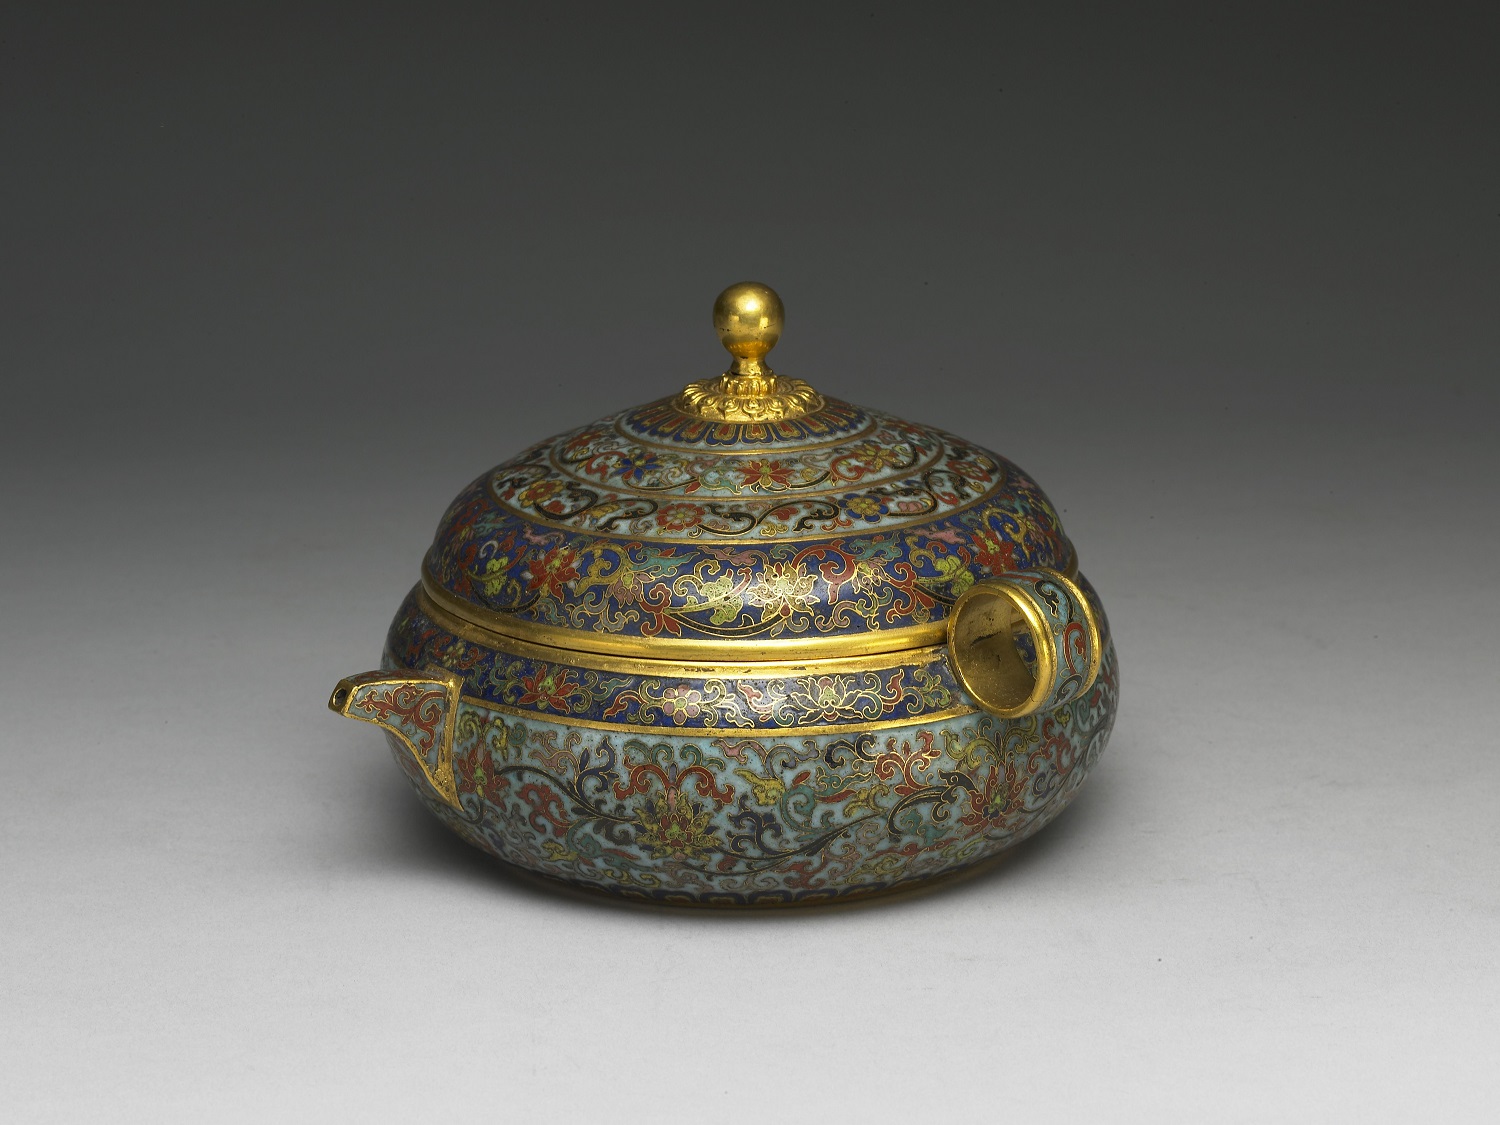 Cloisonné enamel yao vessel with lotus design